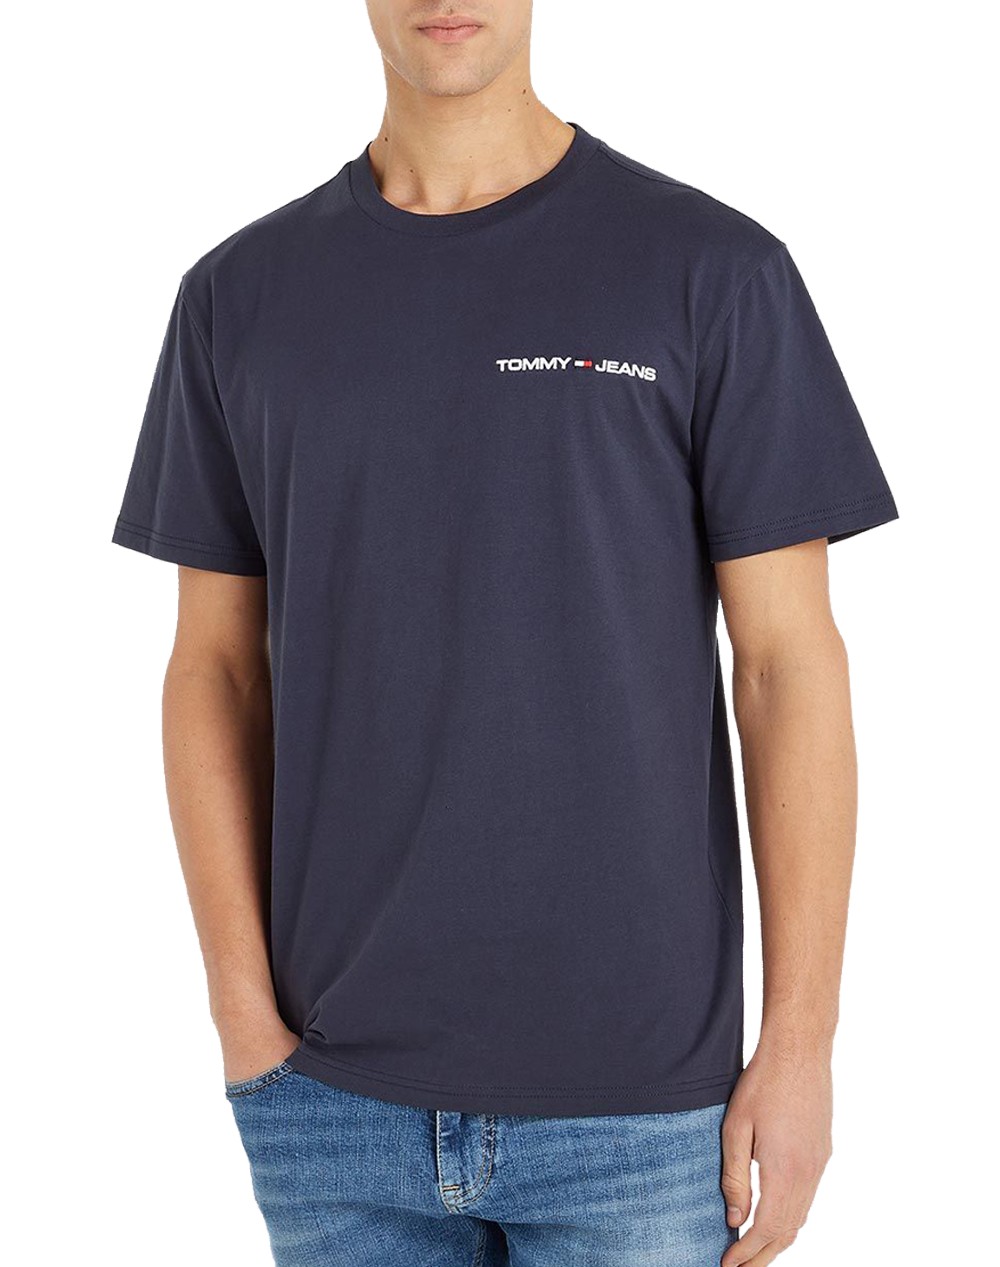 Ανδρικό T-Shirt Navy Tee Jeans Twilight DM0DM16878-C87 Linear Tjm Chest Tommy Clsc